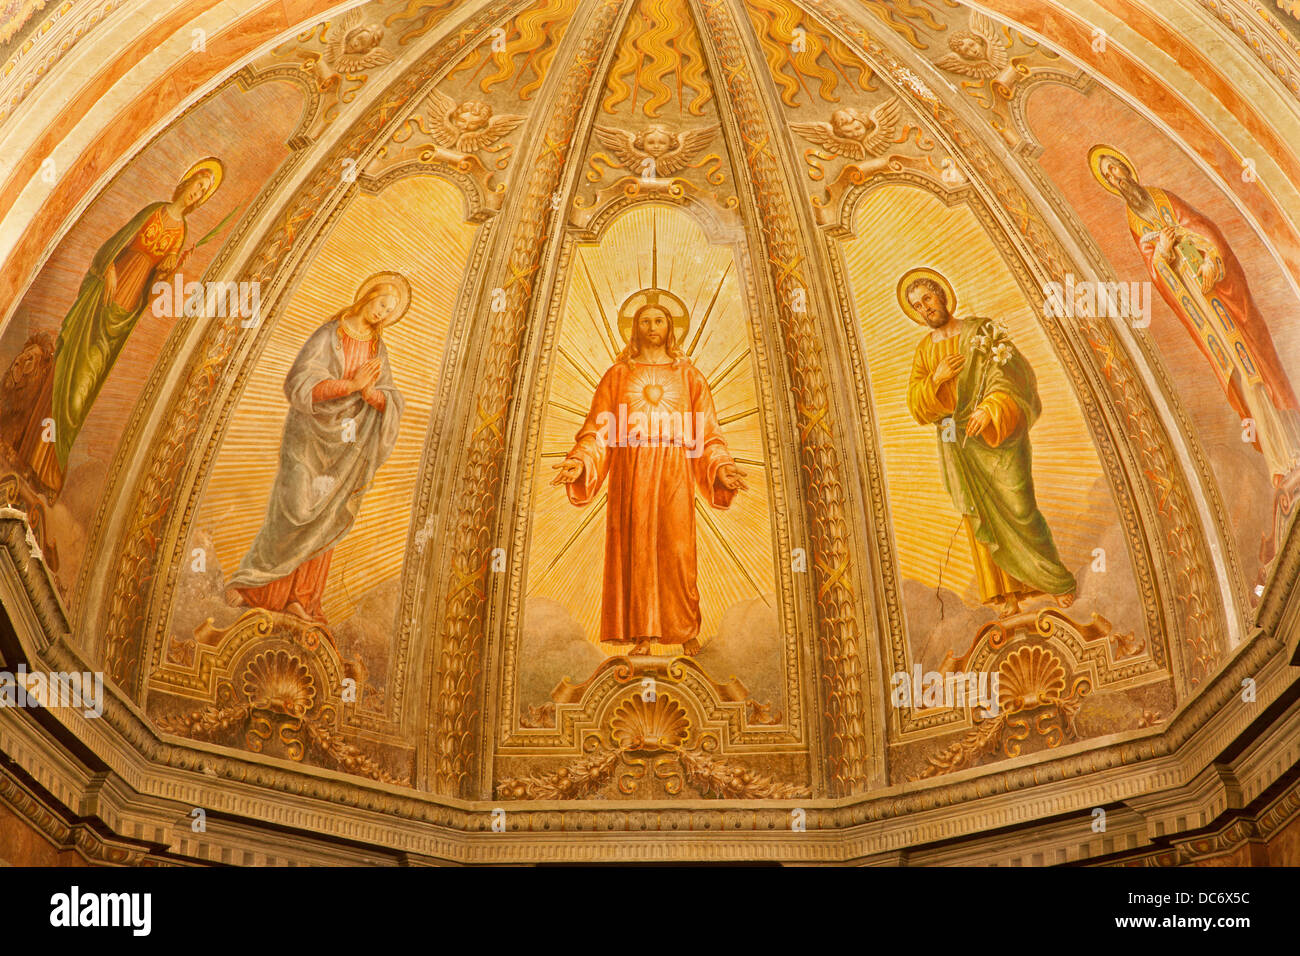 VERONA - 28.Januar: Fresko von auferstanden Jesus von Hauptapsis der Kirche Santa Eufemia am 28. Januar 2013 in Verona, Italien. Stockfoto